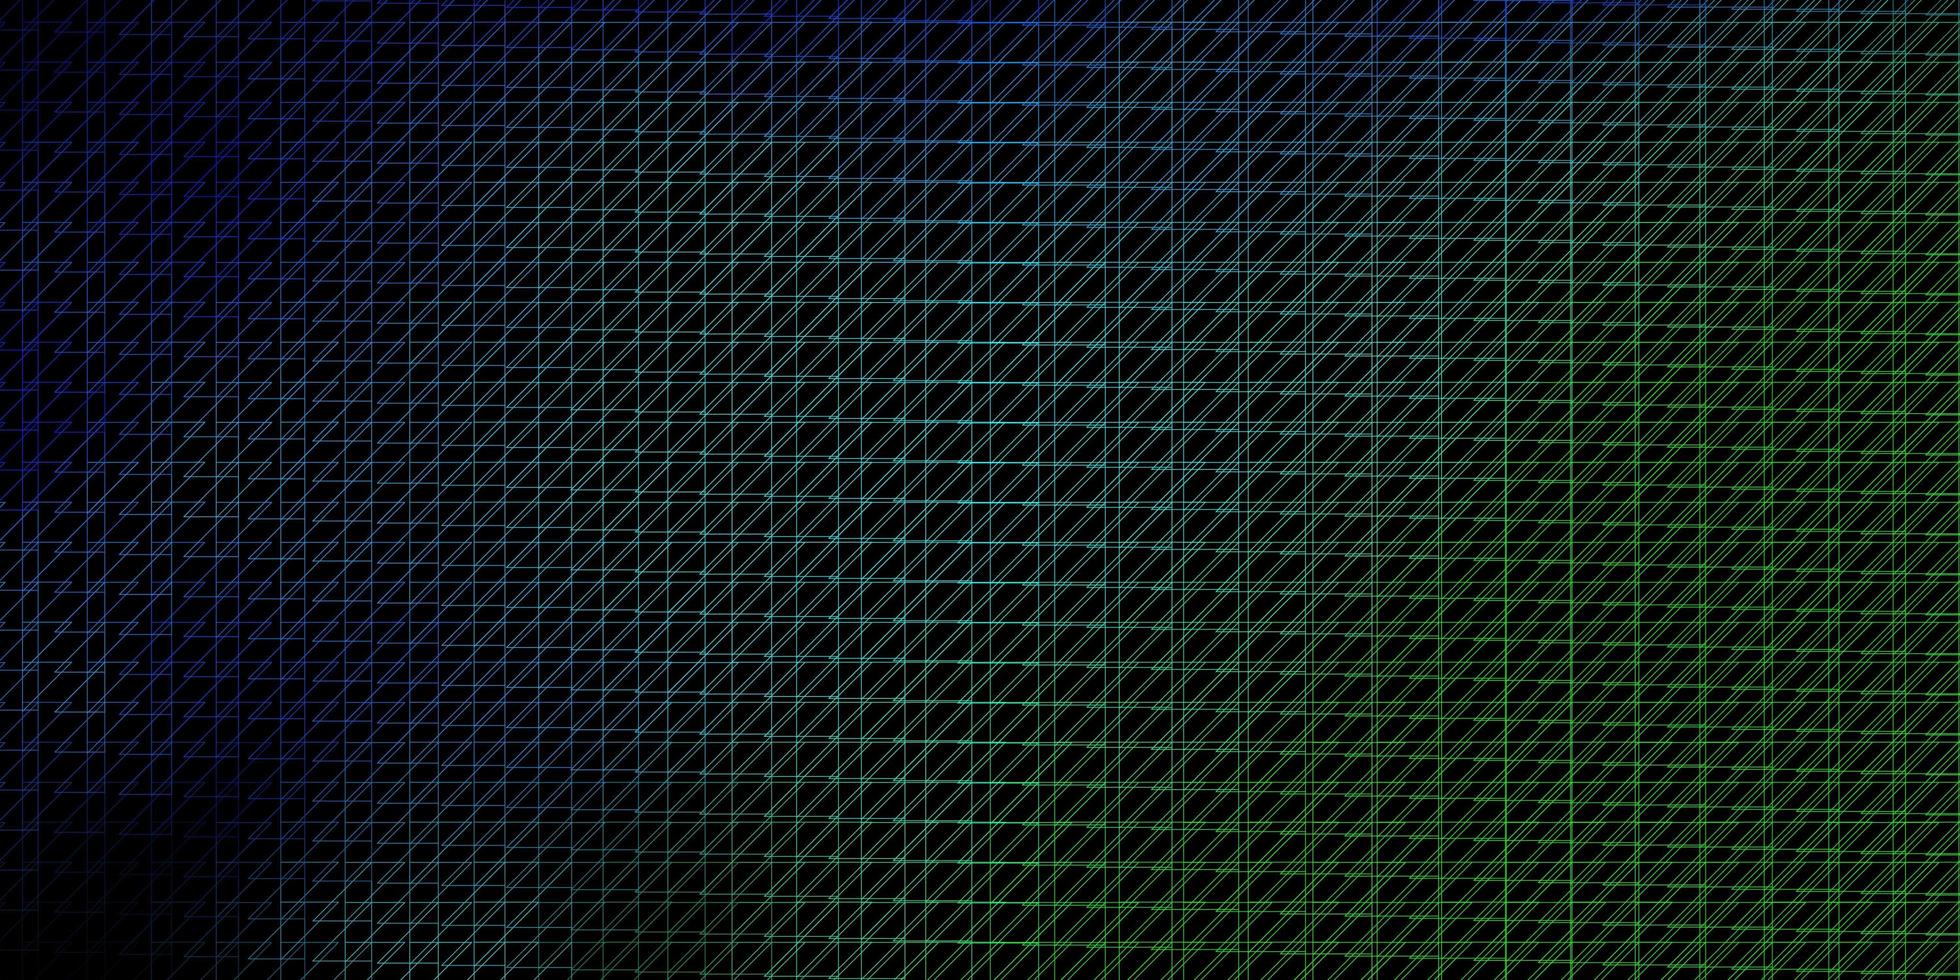 padrão de vetor verde azul escuro com ilustração de gradiente de linhas com linhas retas em padrão de estilo abstrato para folhetos